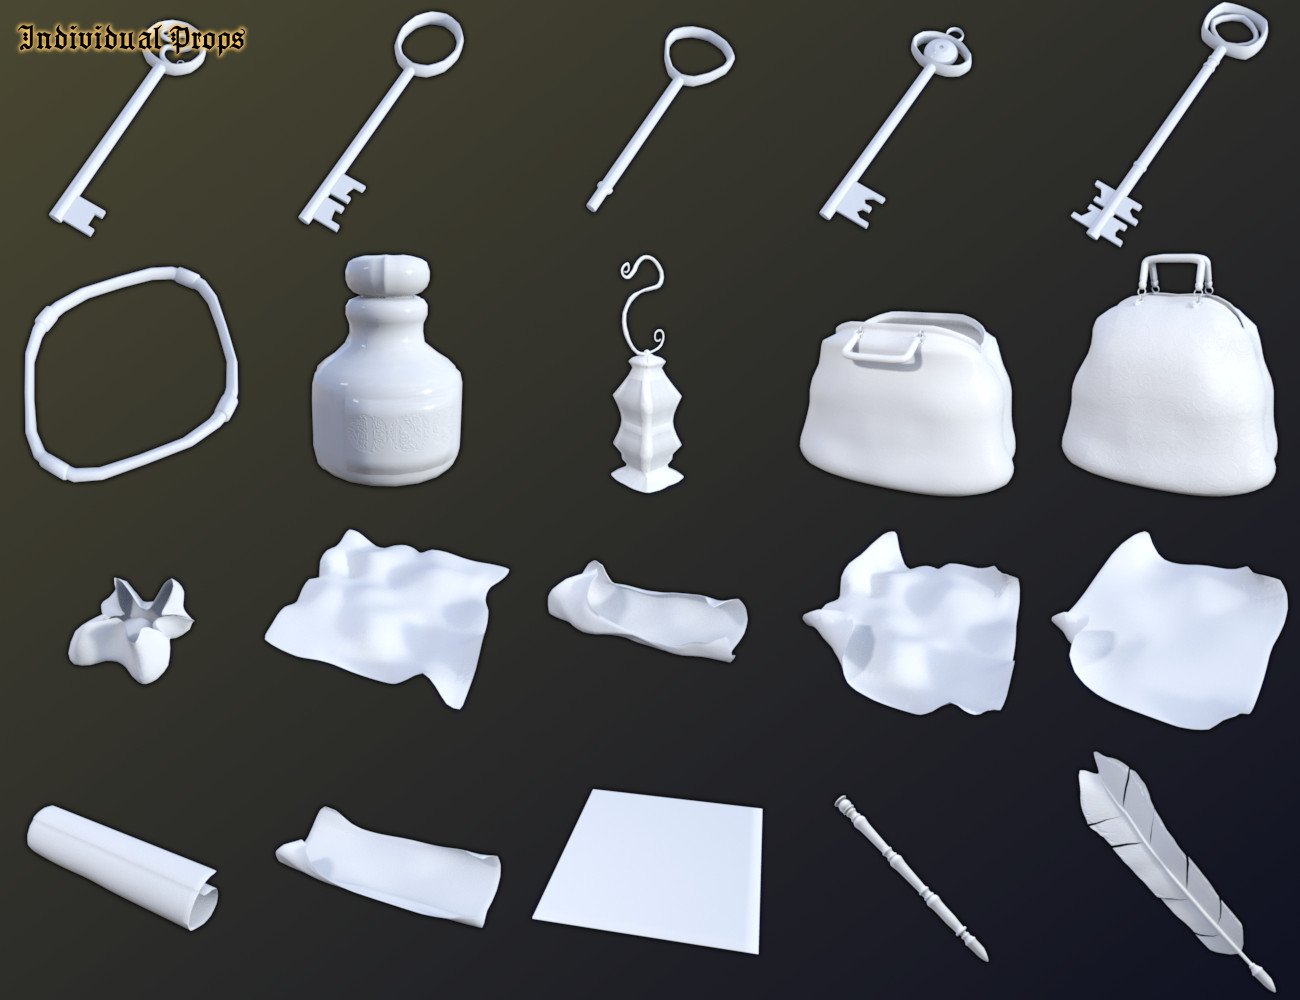 FSL Fantasy Clutter Books Scrolls & Accessories by: Fuseling, 3D Models by Daz 3D